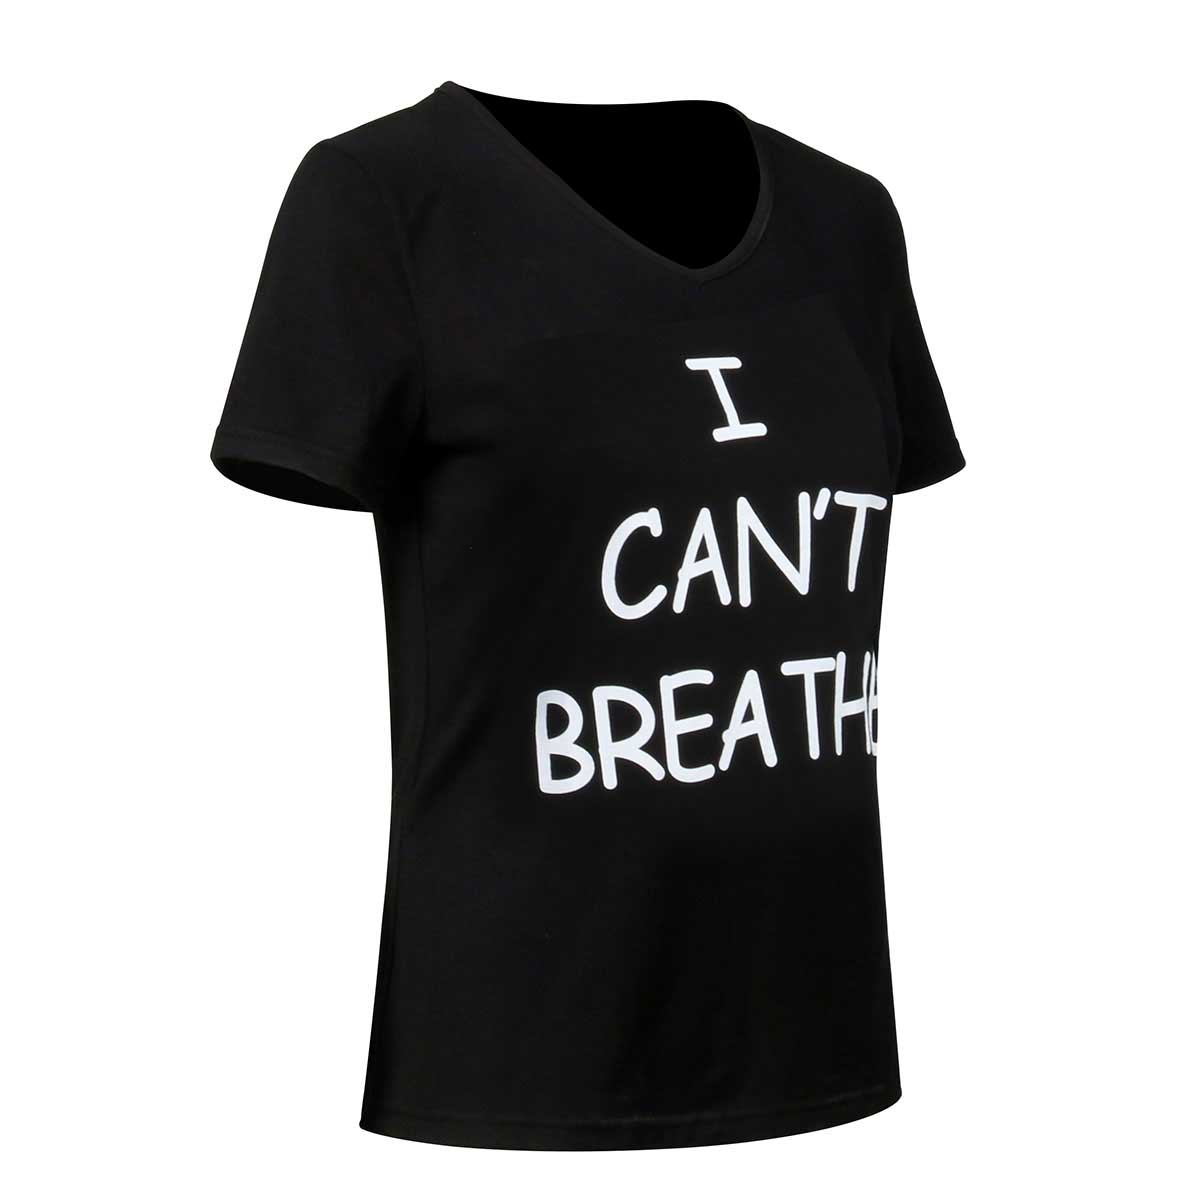 No puedo respirar la camiseta de la protesta negra de la camiseta